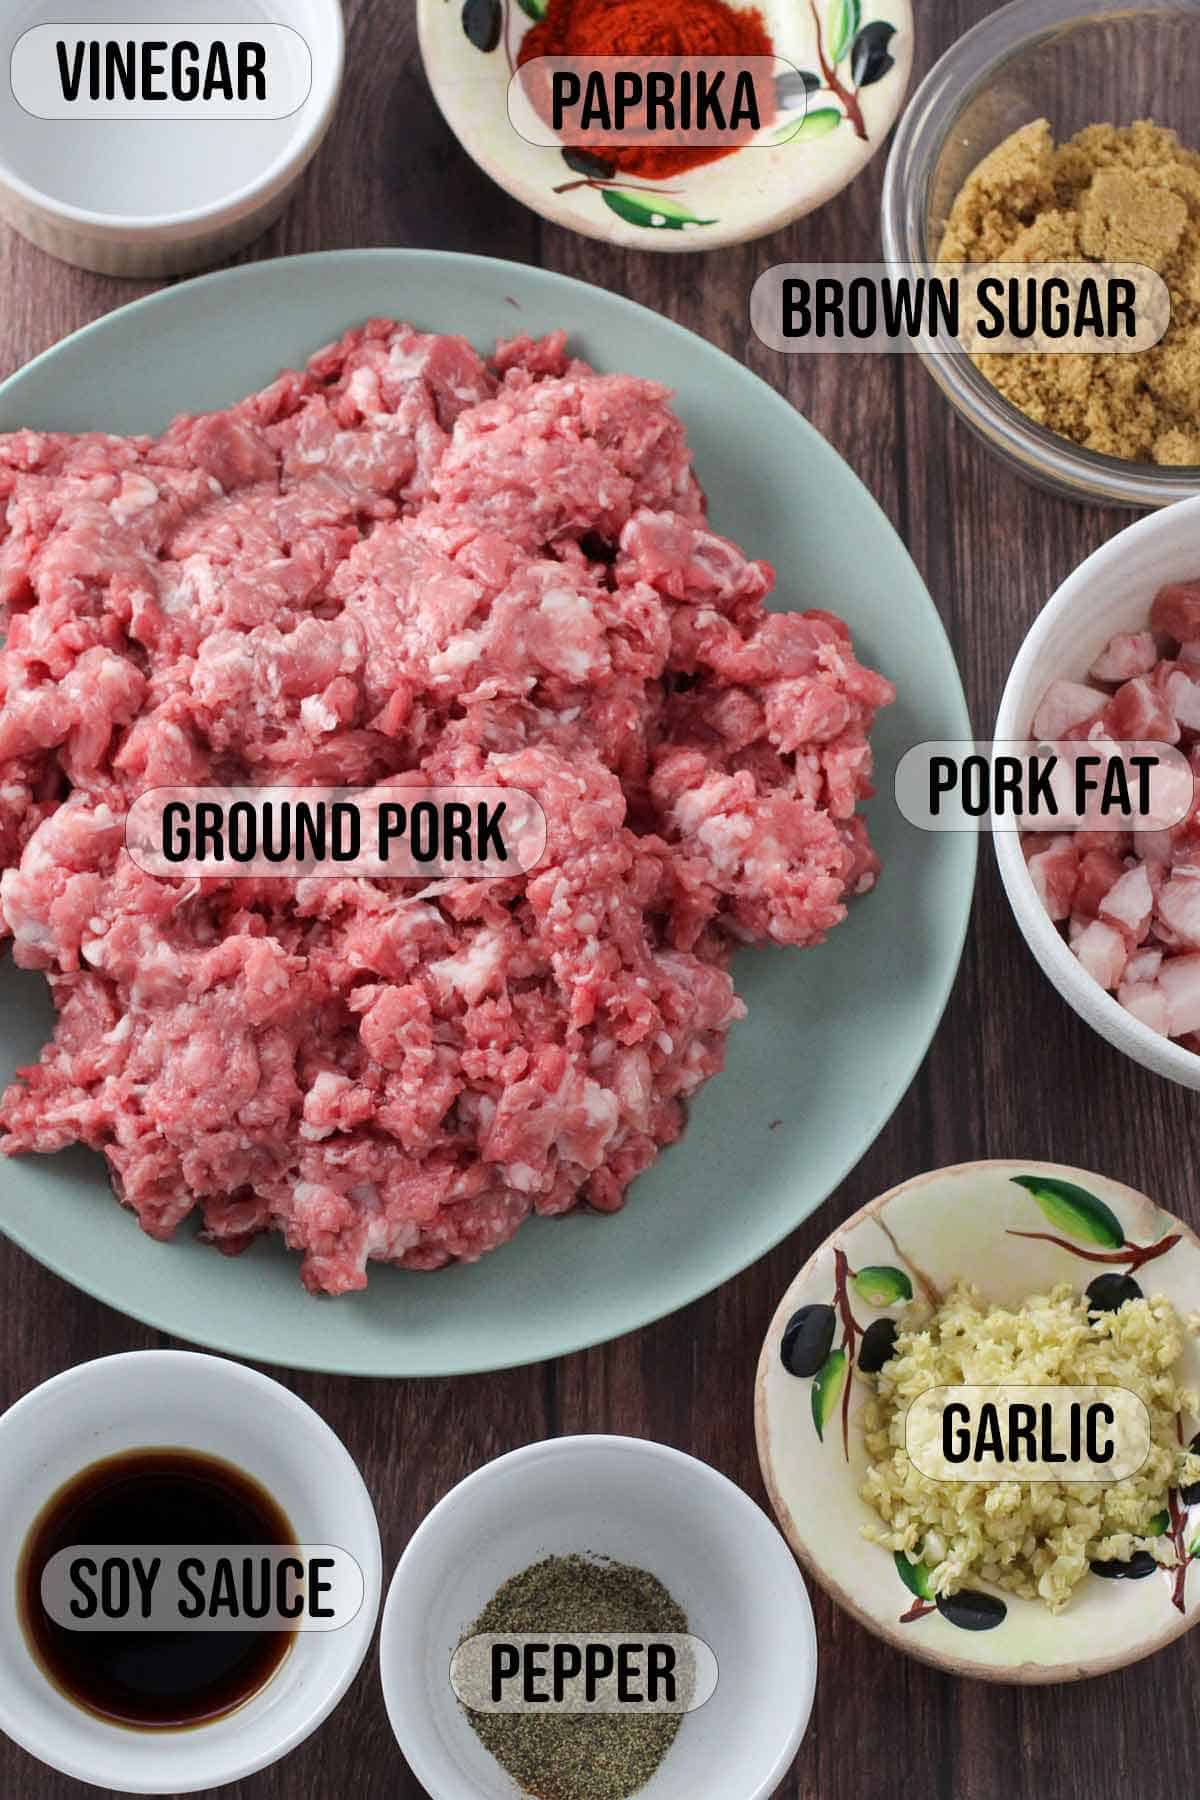 ground pork, ground pork fat, garlic, soy sauce, pepper, paprika, brown sugar, vinegar in bowls.